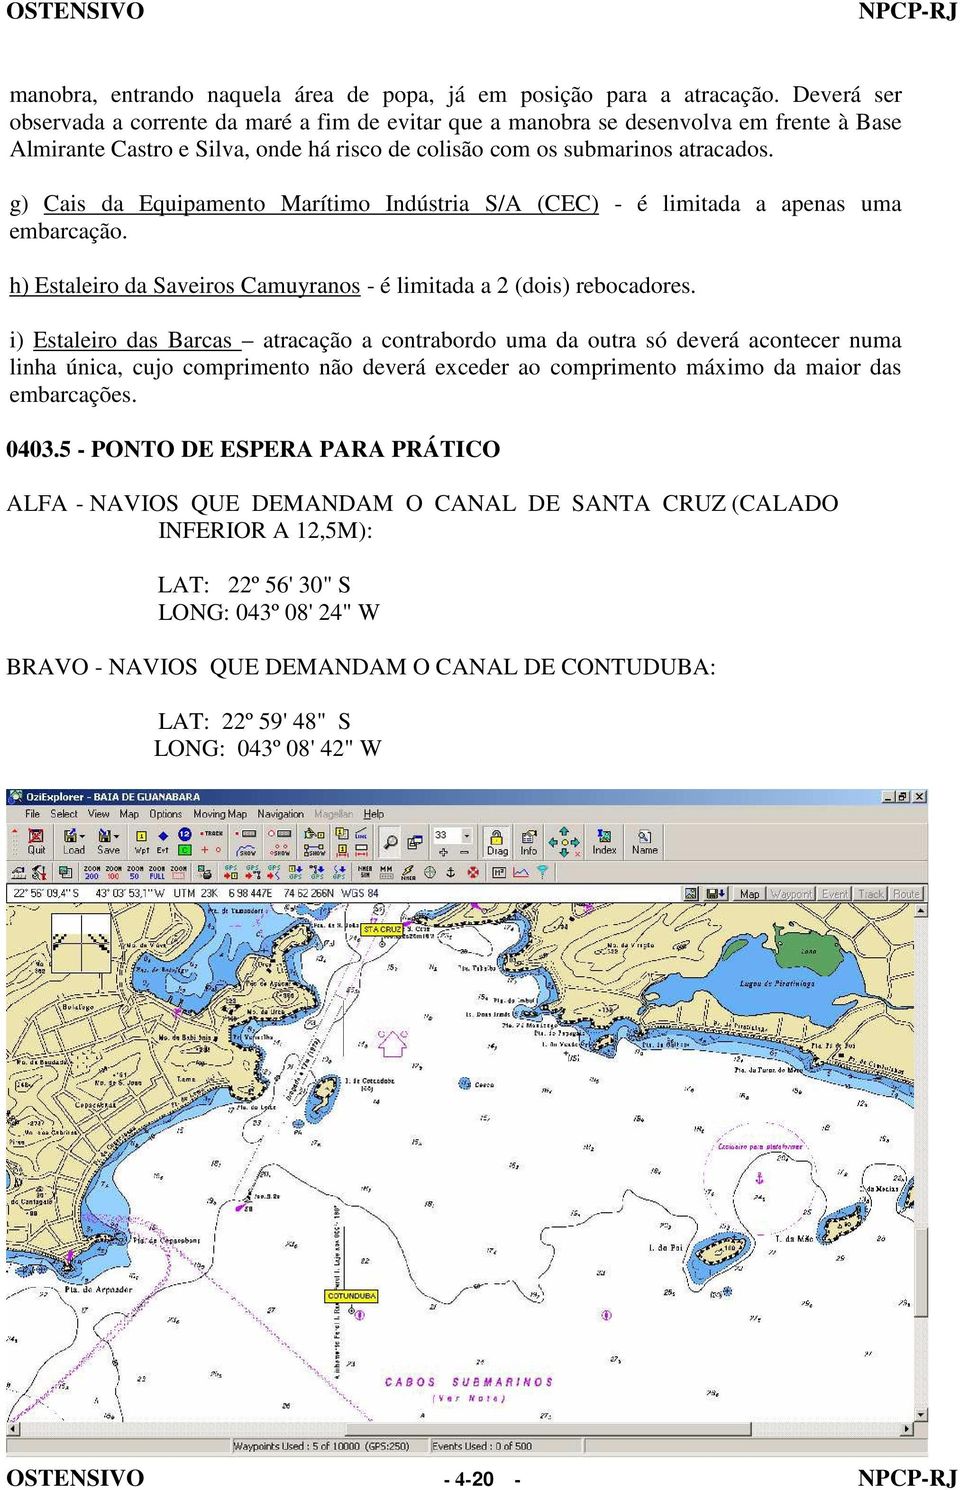 g) Cais da Equipamento Marítimo Indústria S/A (CEC) - é limitada a apenas uma embarcação. h) Estaleiro da Saveiros Camuyranos - é limitada a 2 (dois) rebocadores.